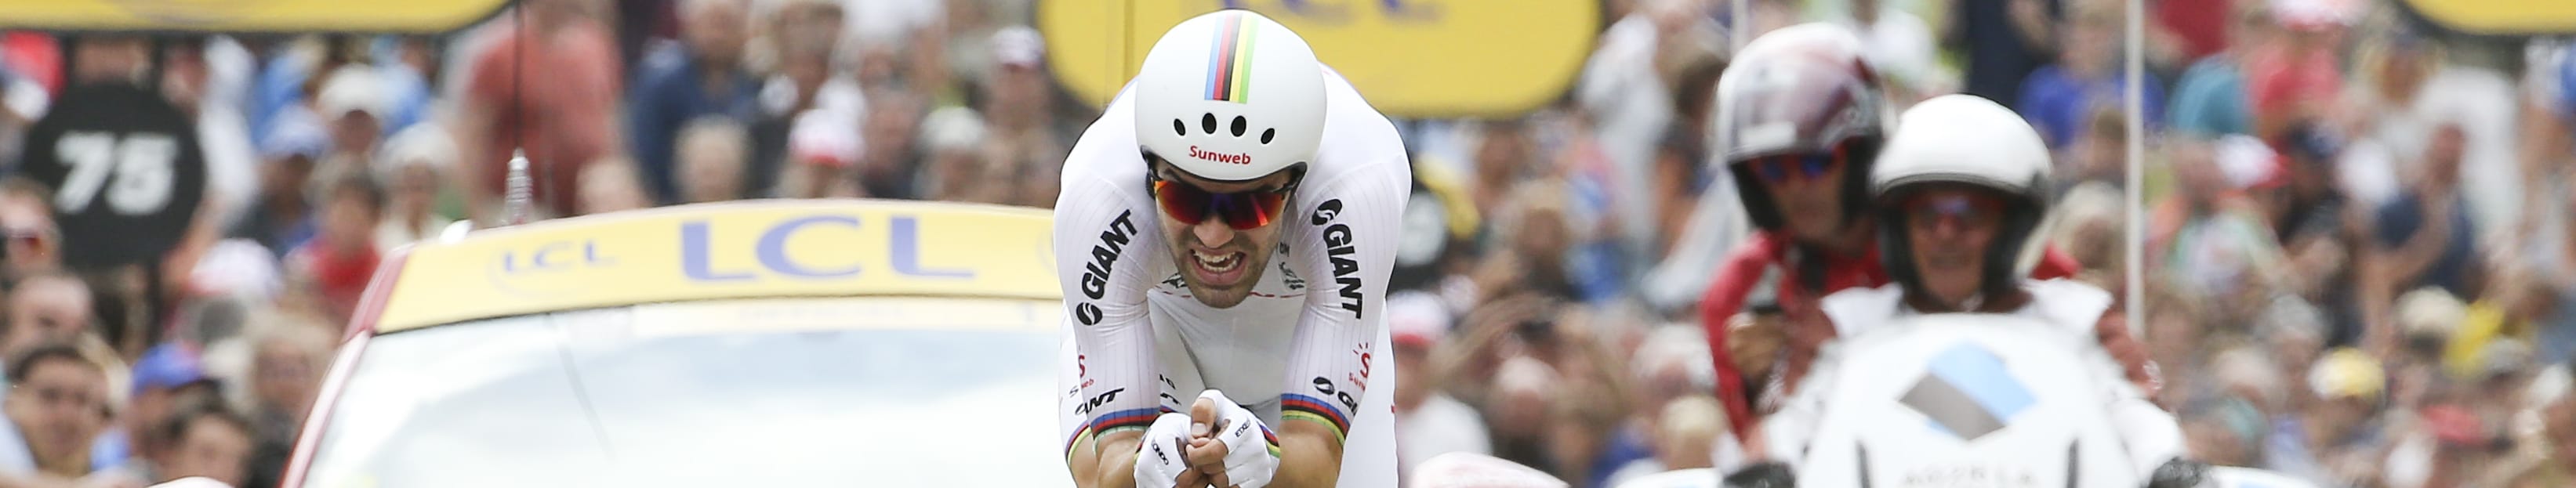 Giro d'Italia 2019: Tom Dumoulin favorito di una corsa incertissima. Ecco il percorso e i record